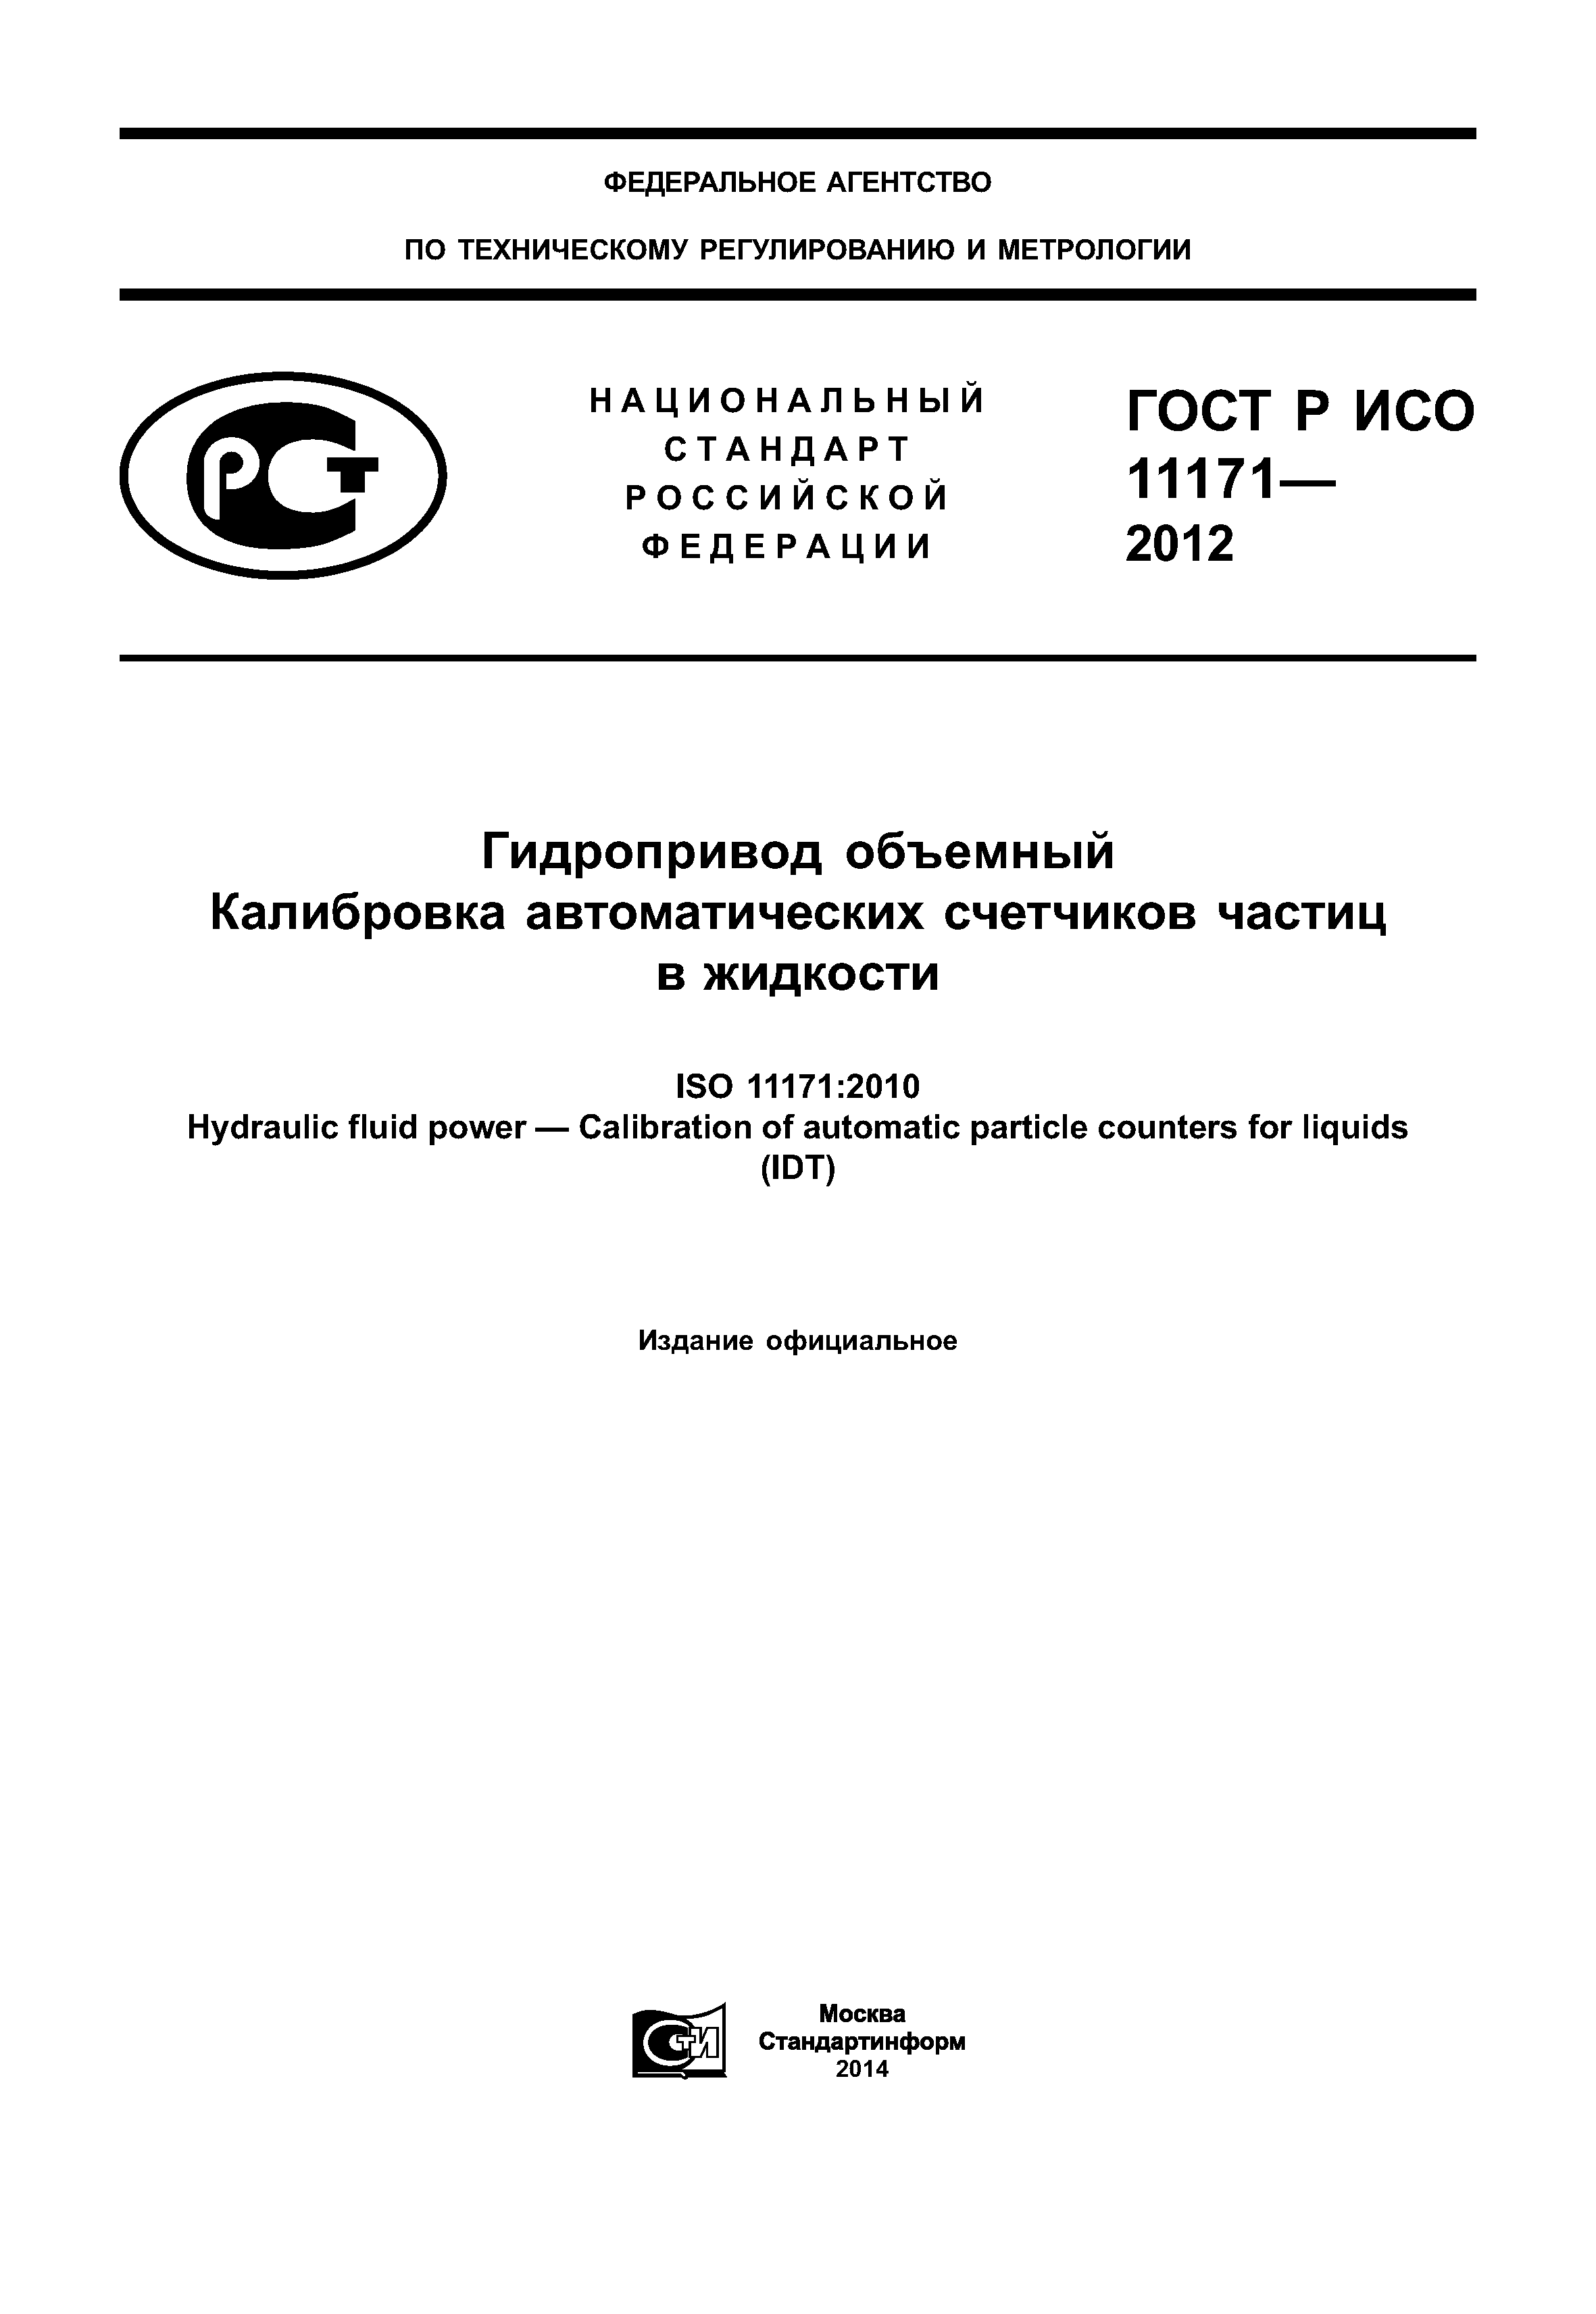 ГОСТ Р ИСО 11171-2012